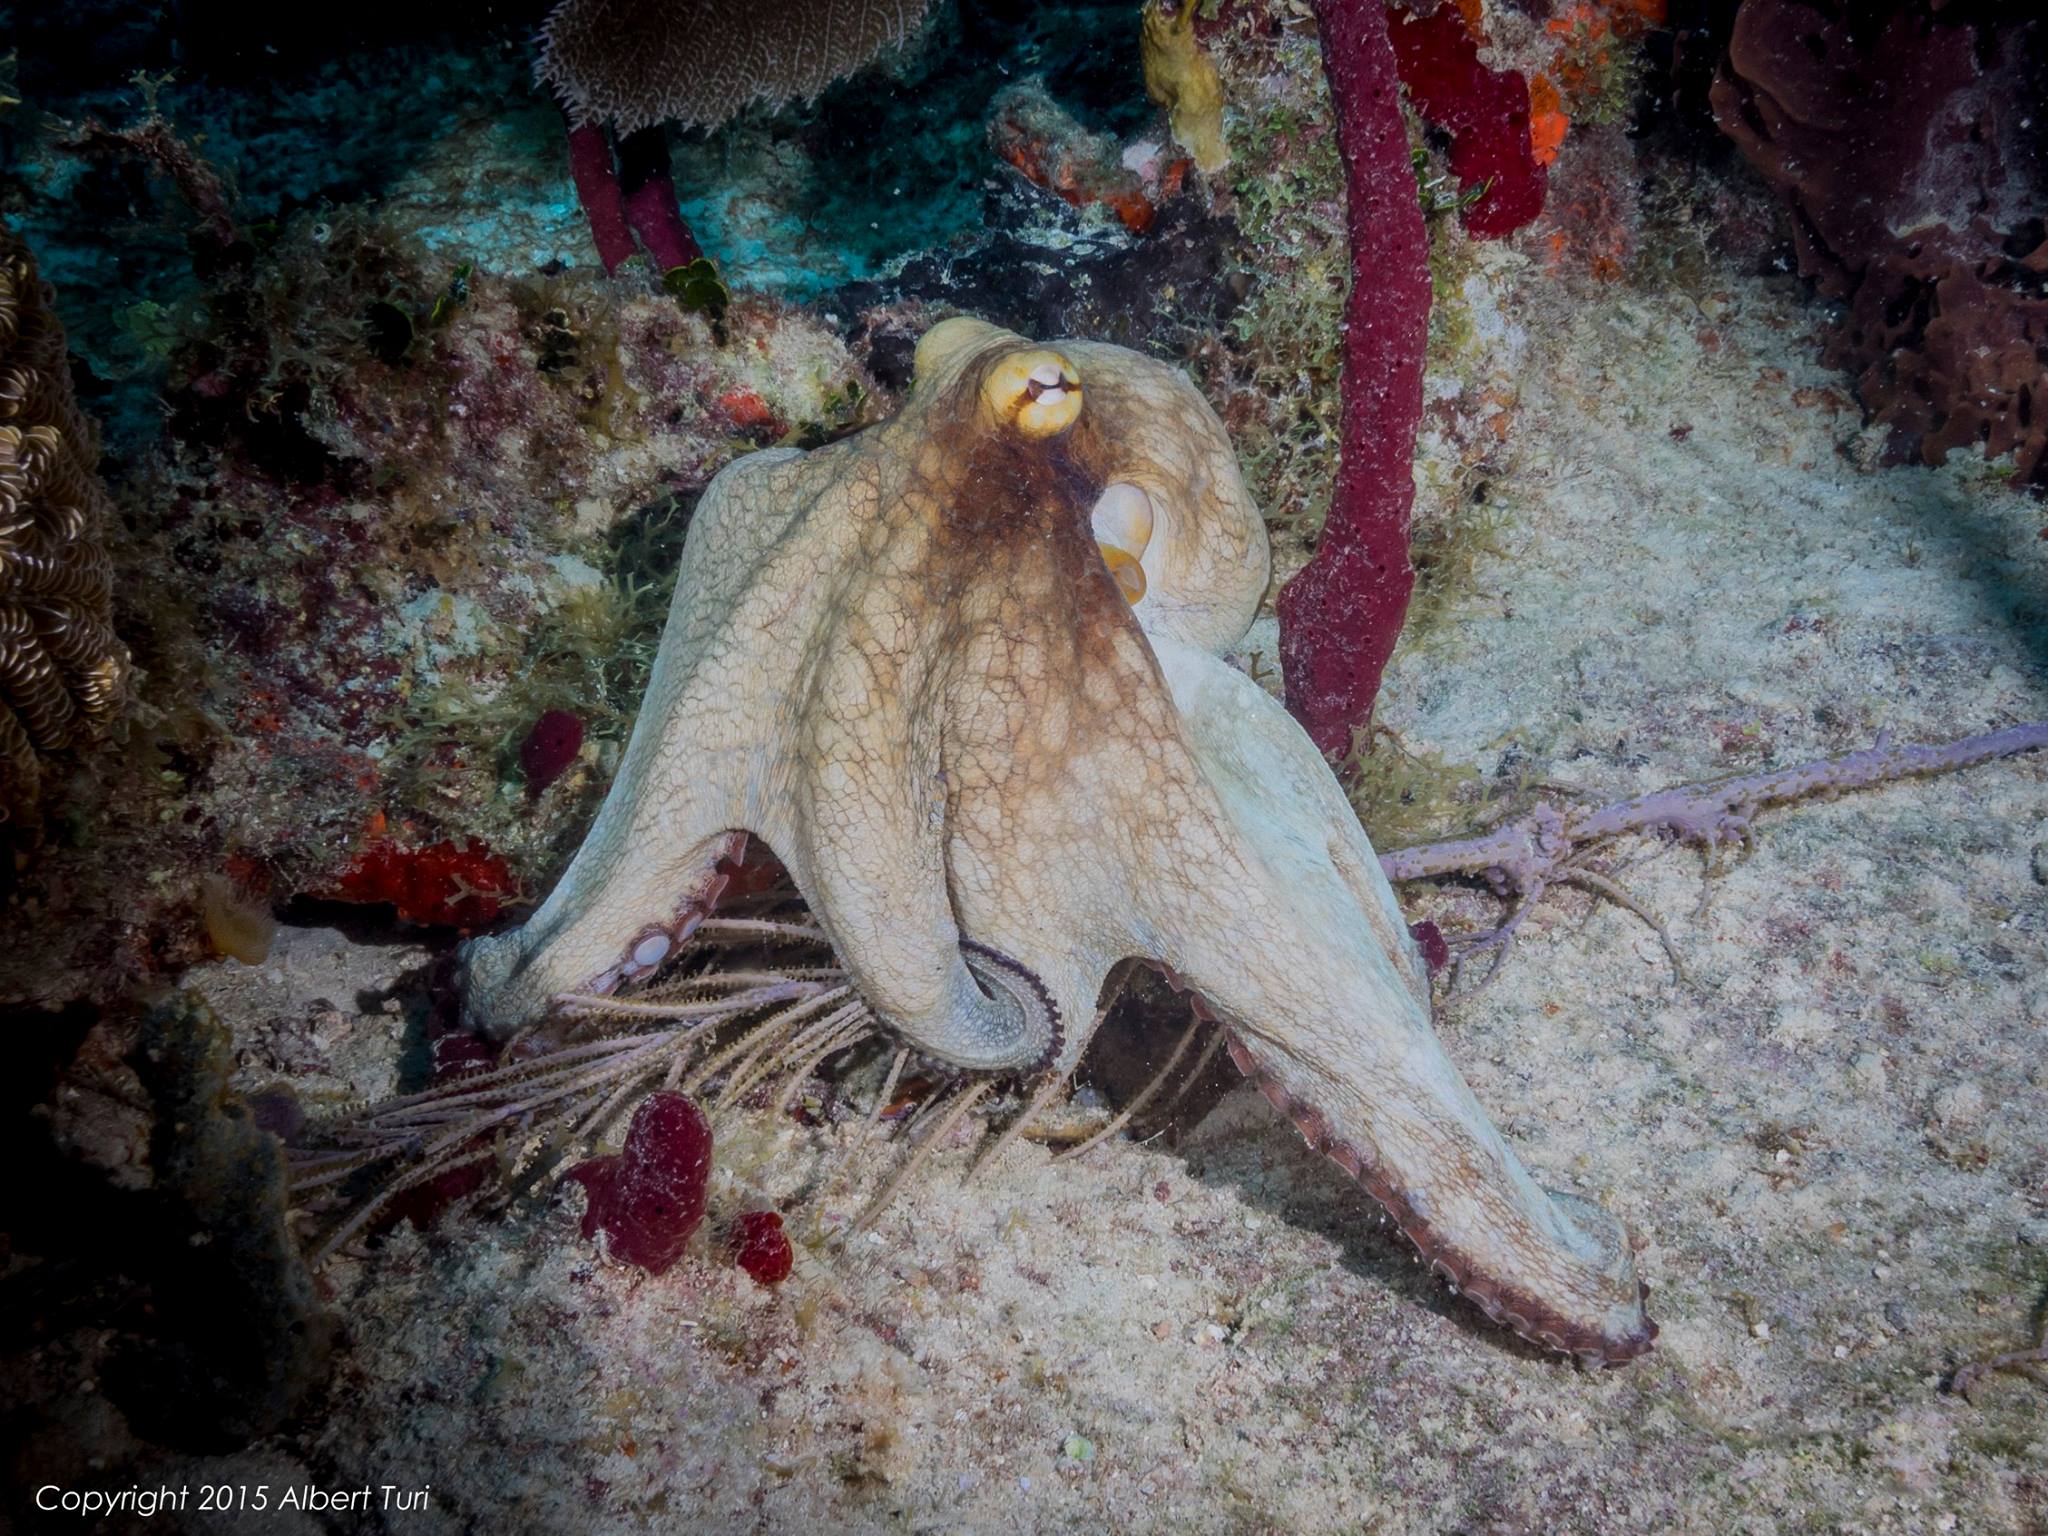 octopus on sand